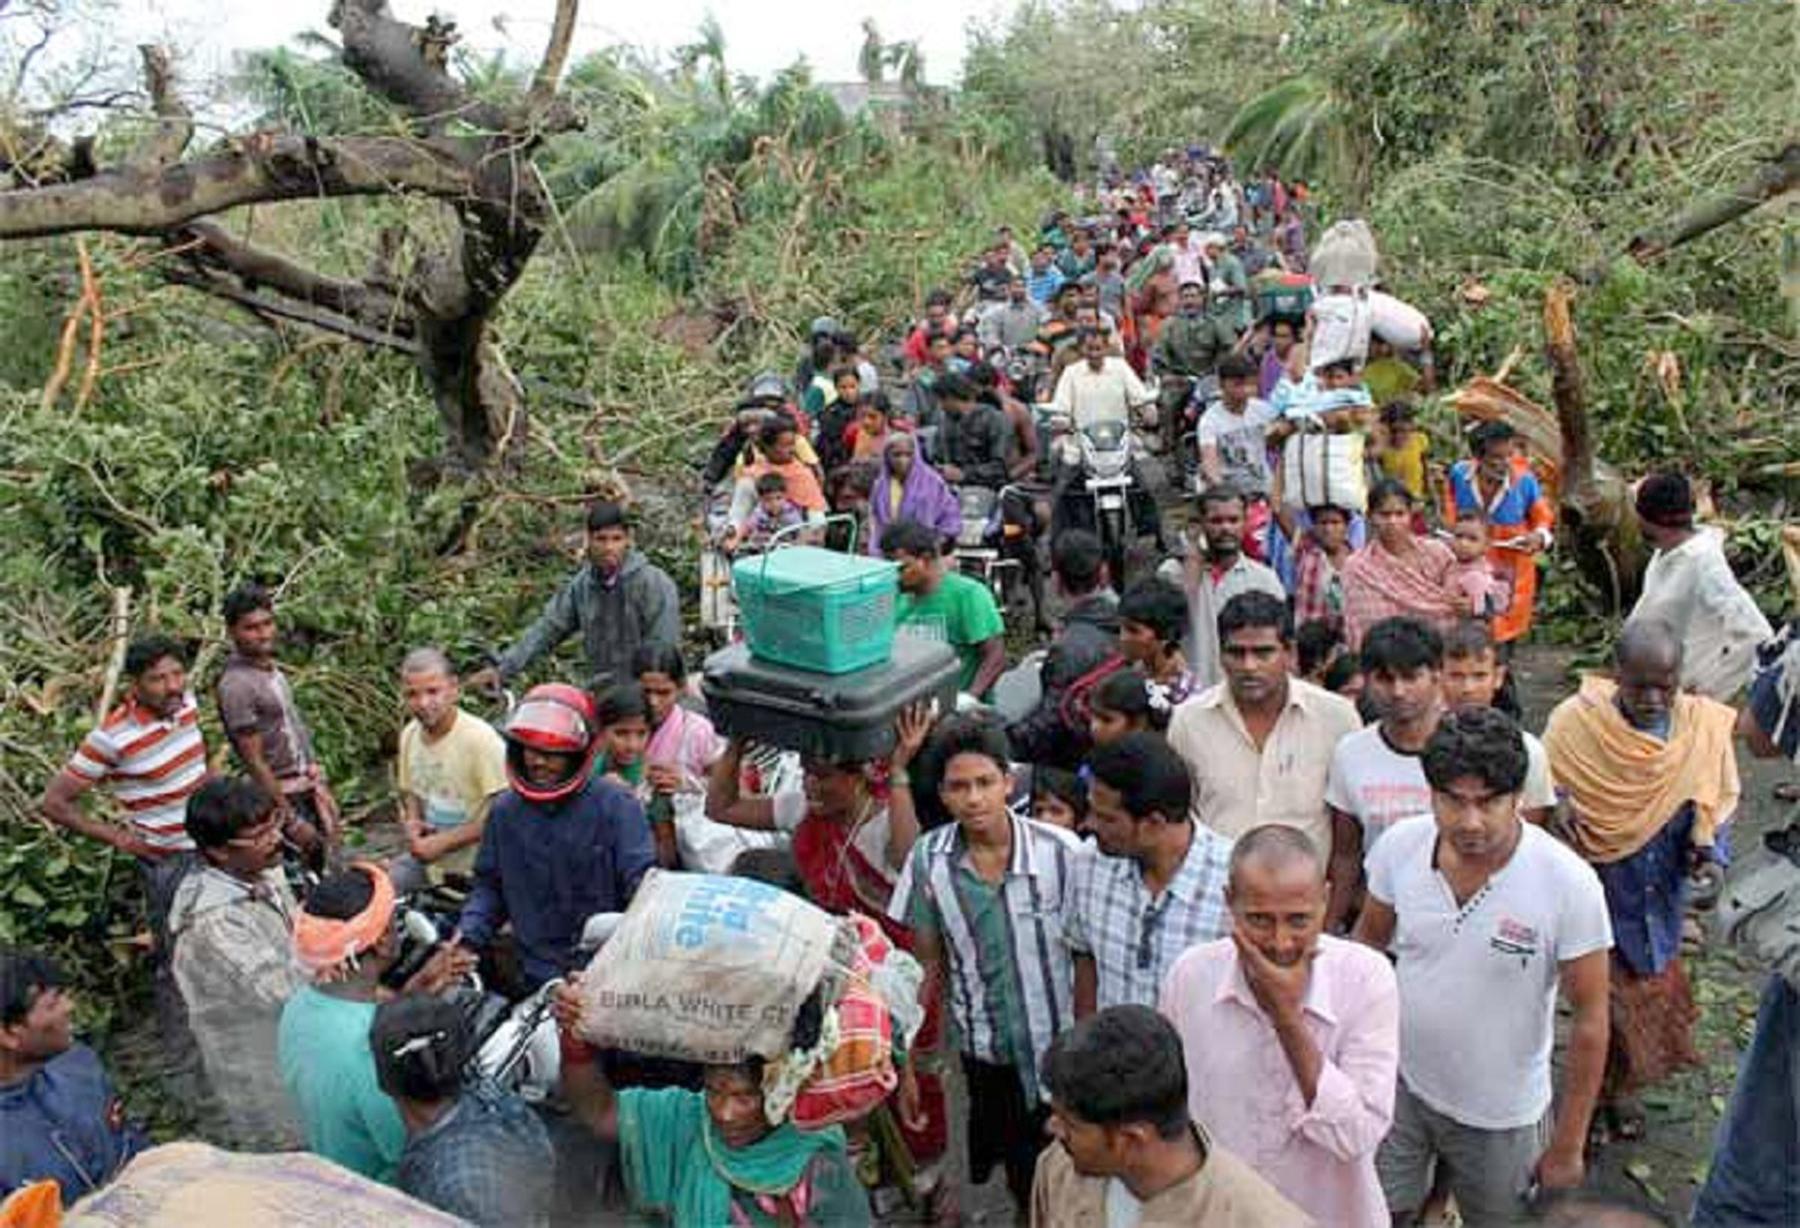 DorfbewohnerInnen kehren nach Zyklon Phailin nach Hause zurück. Foto: LWSIT